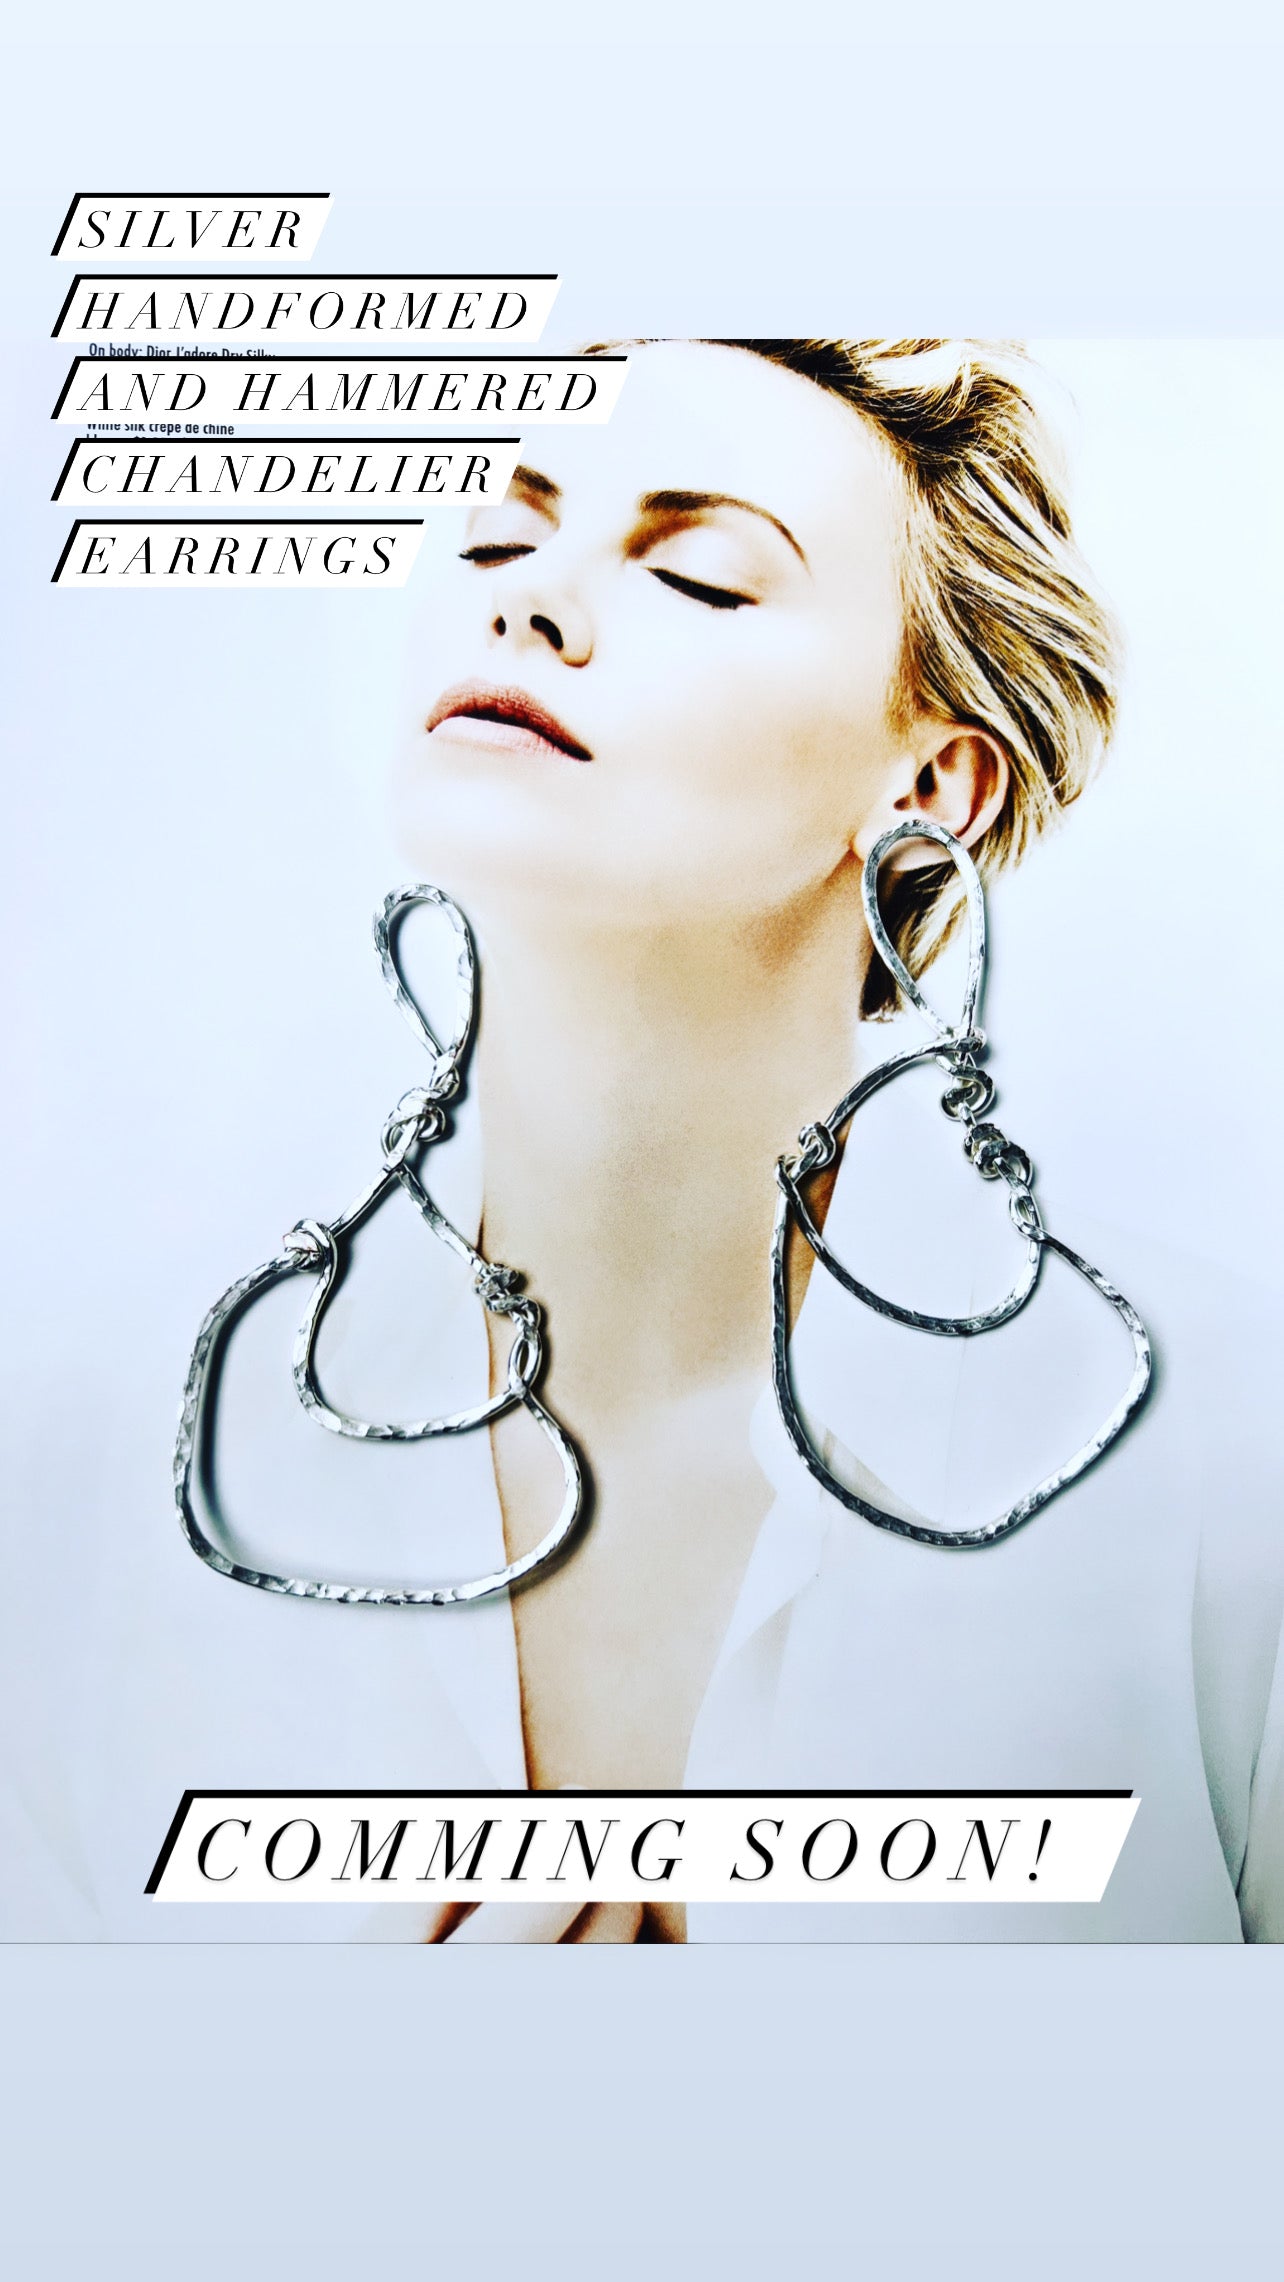 Sterling Silver Hand-formed Chandelier Earrings